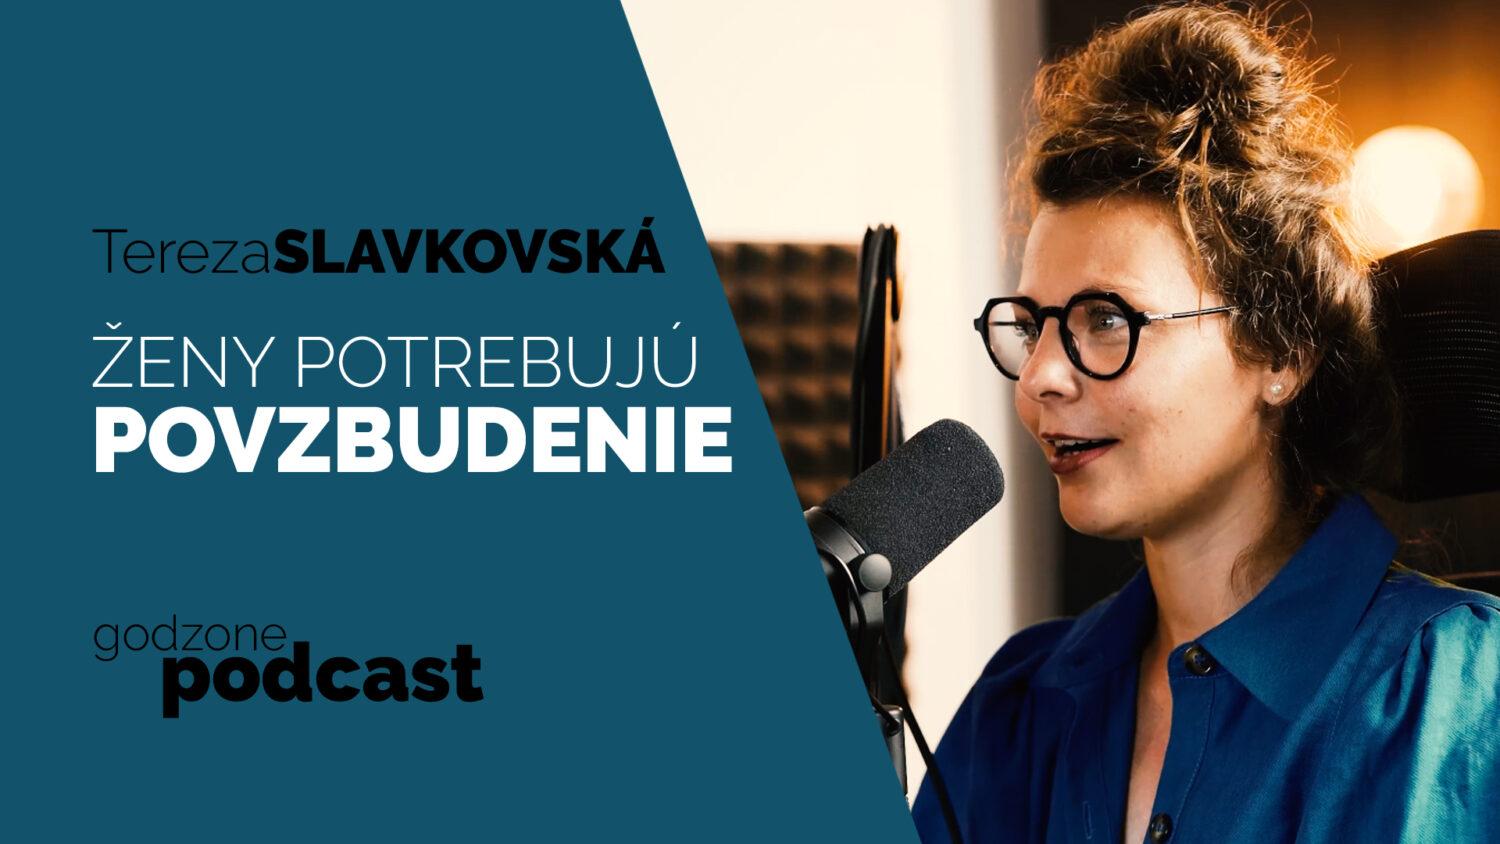 V novom Godzone podcaste hovorí Tereza Slavkovská o tom aké je vzácne keď sa spolu stretnú ženy